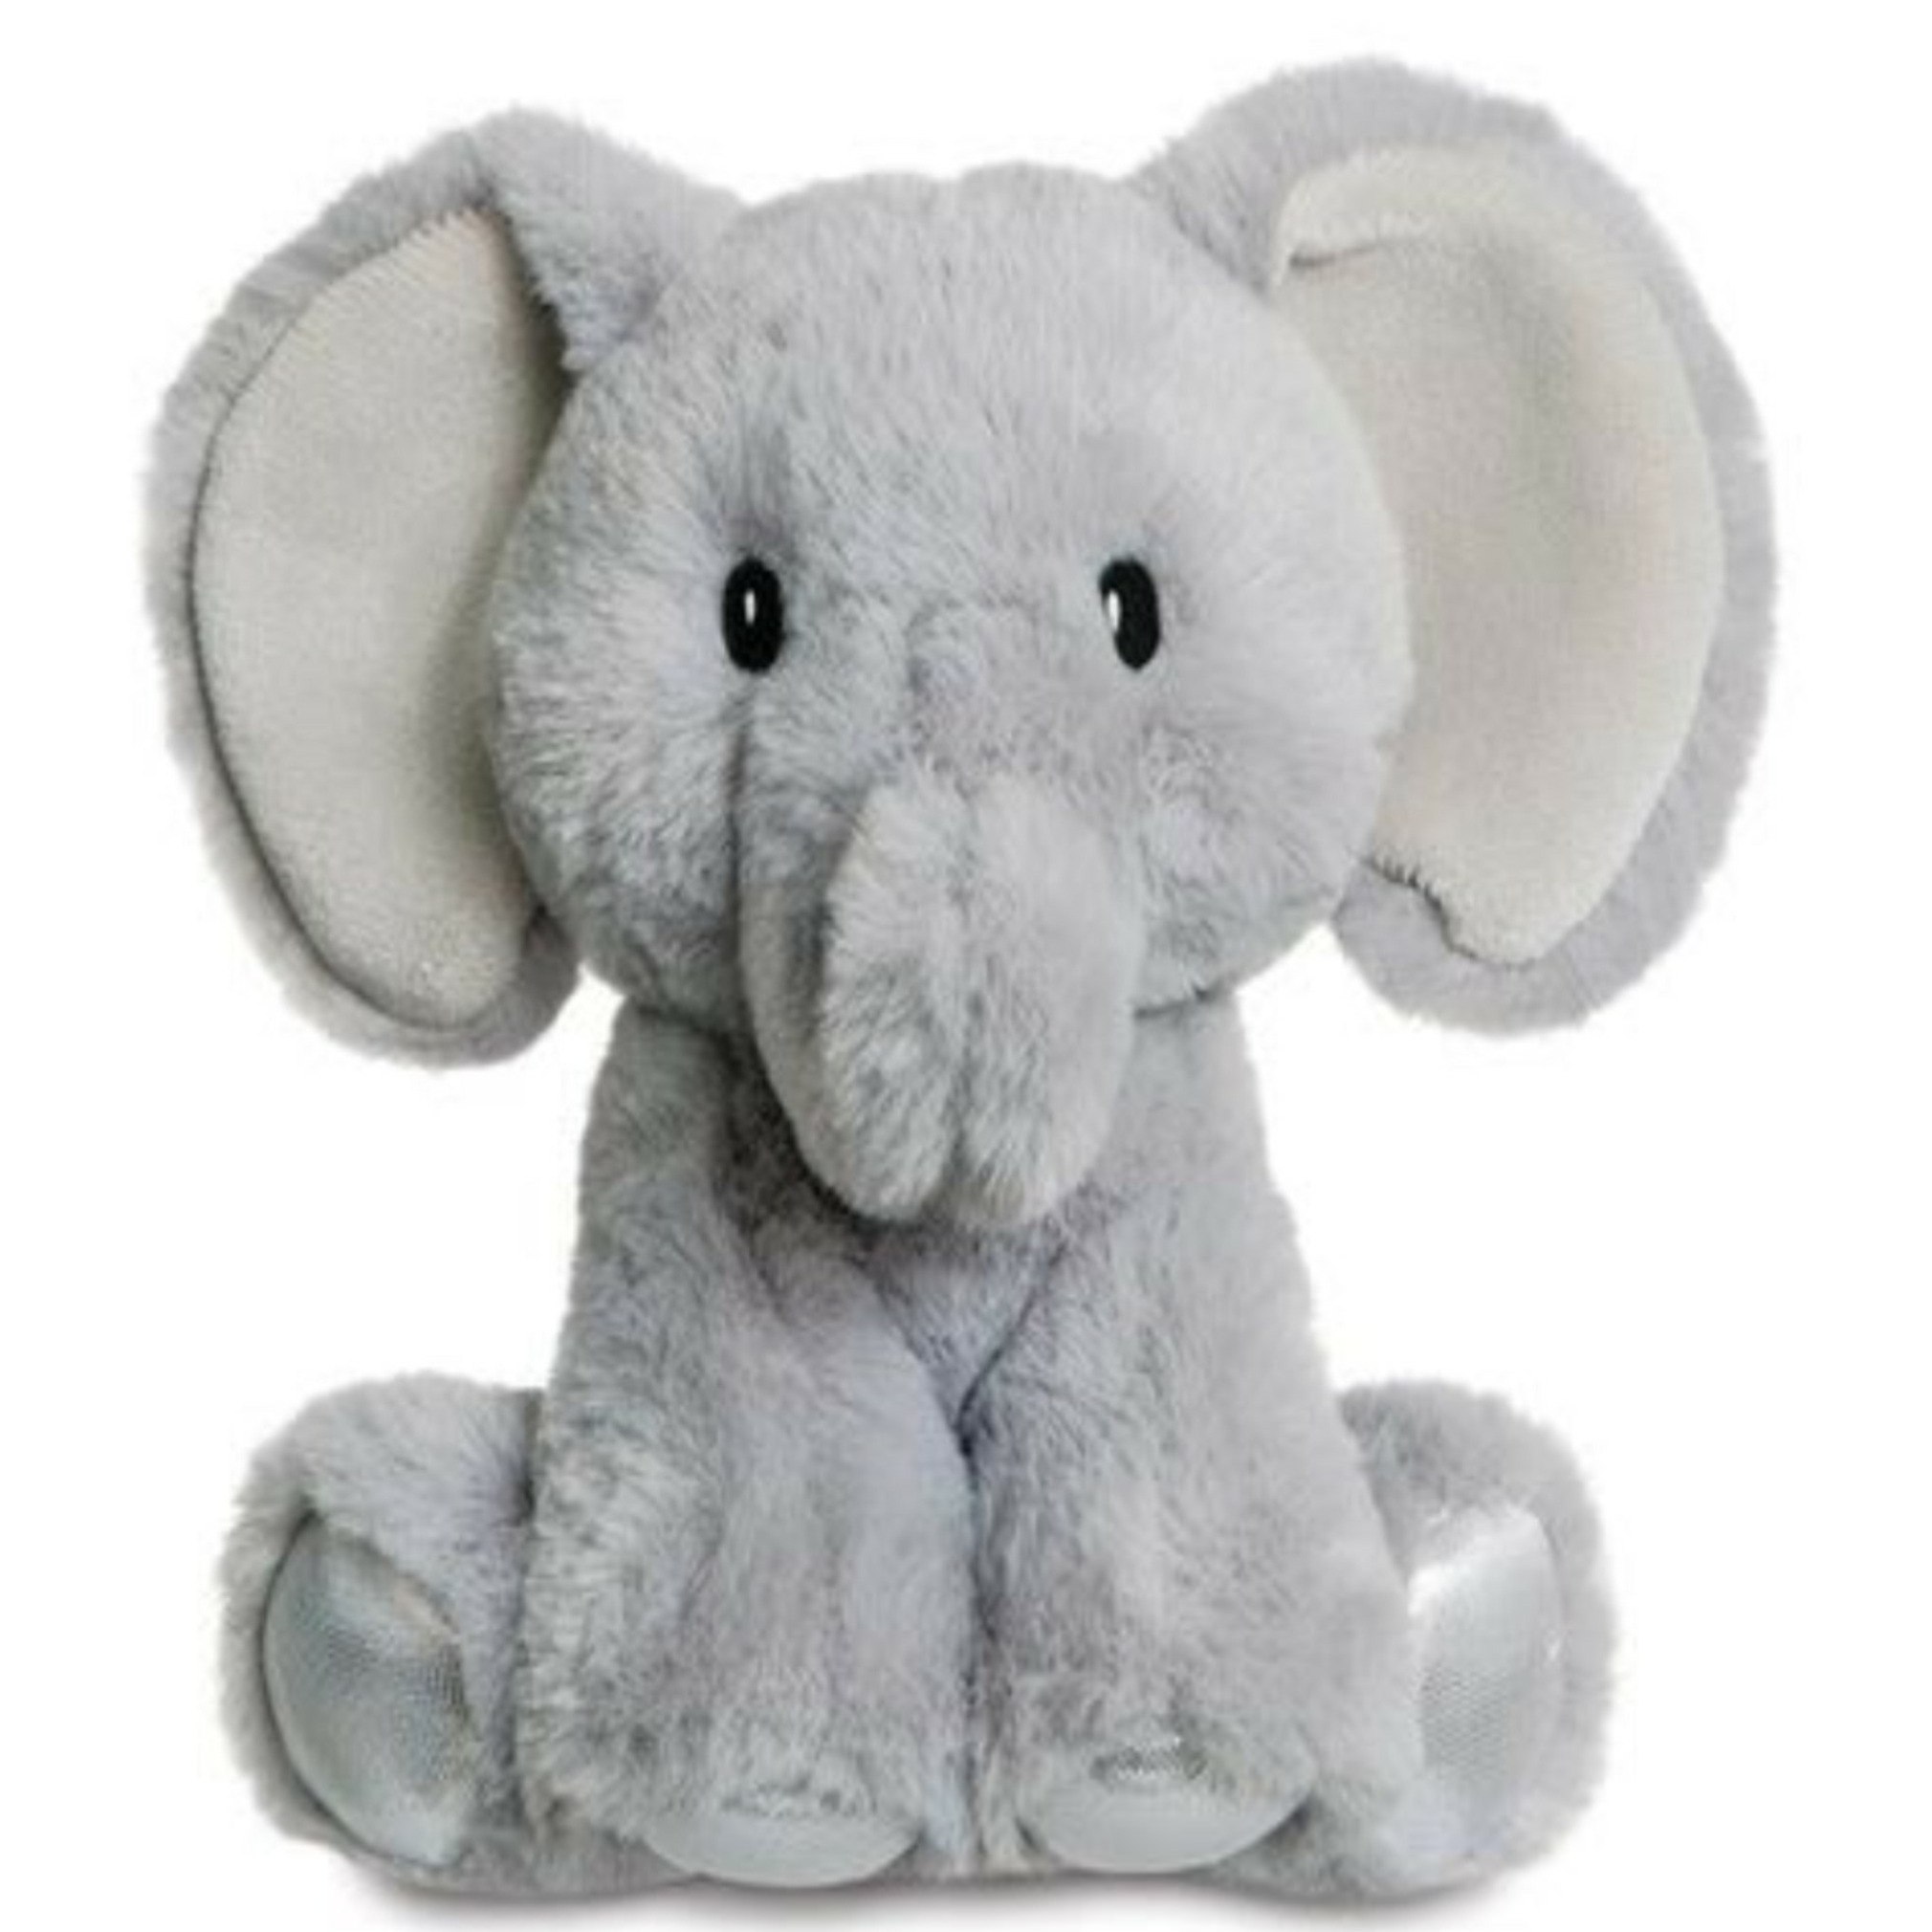 Aurora Pluche knuffeldier olifant - grijs - 20 cm - safari dieren thema -